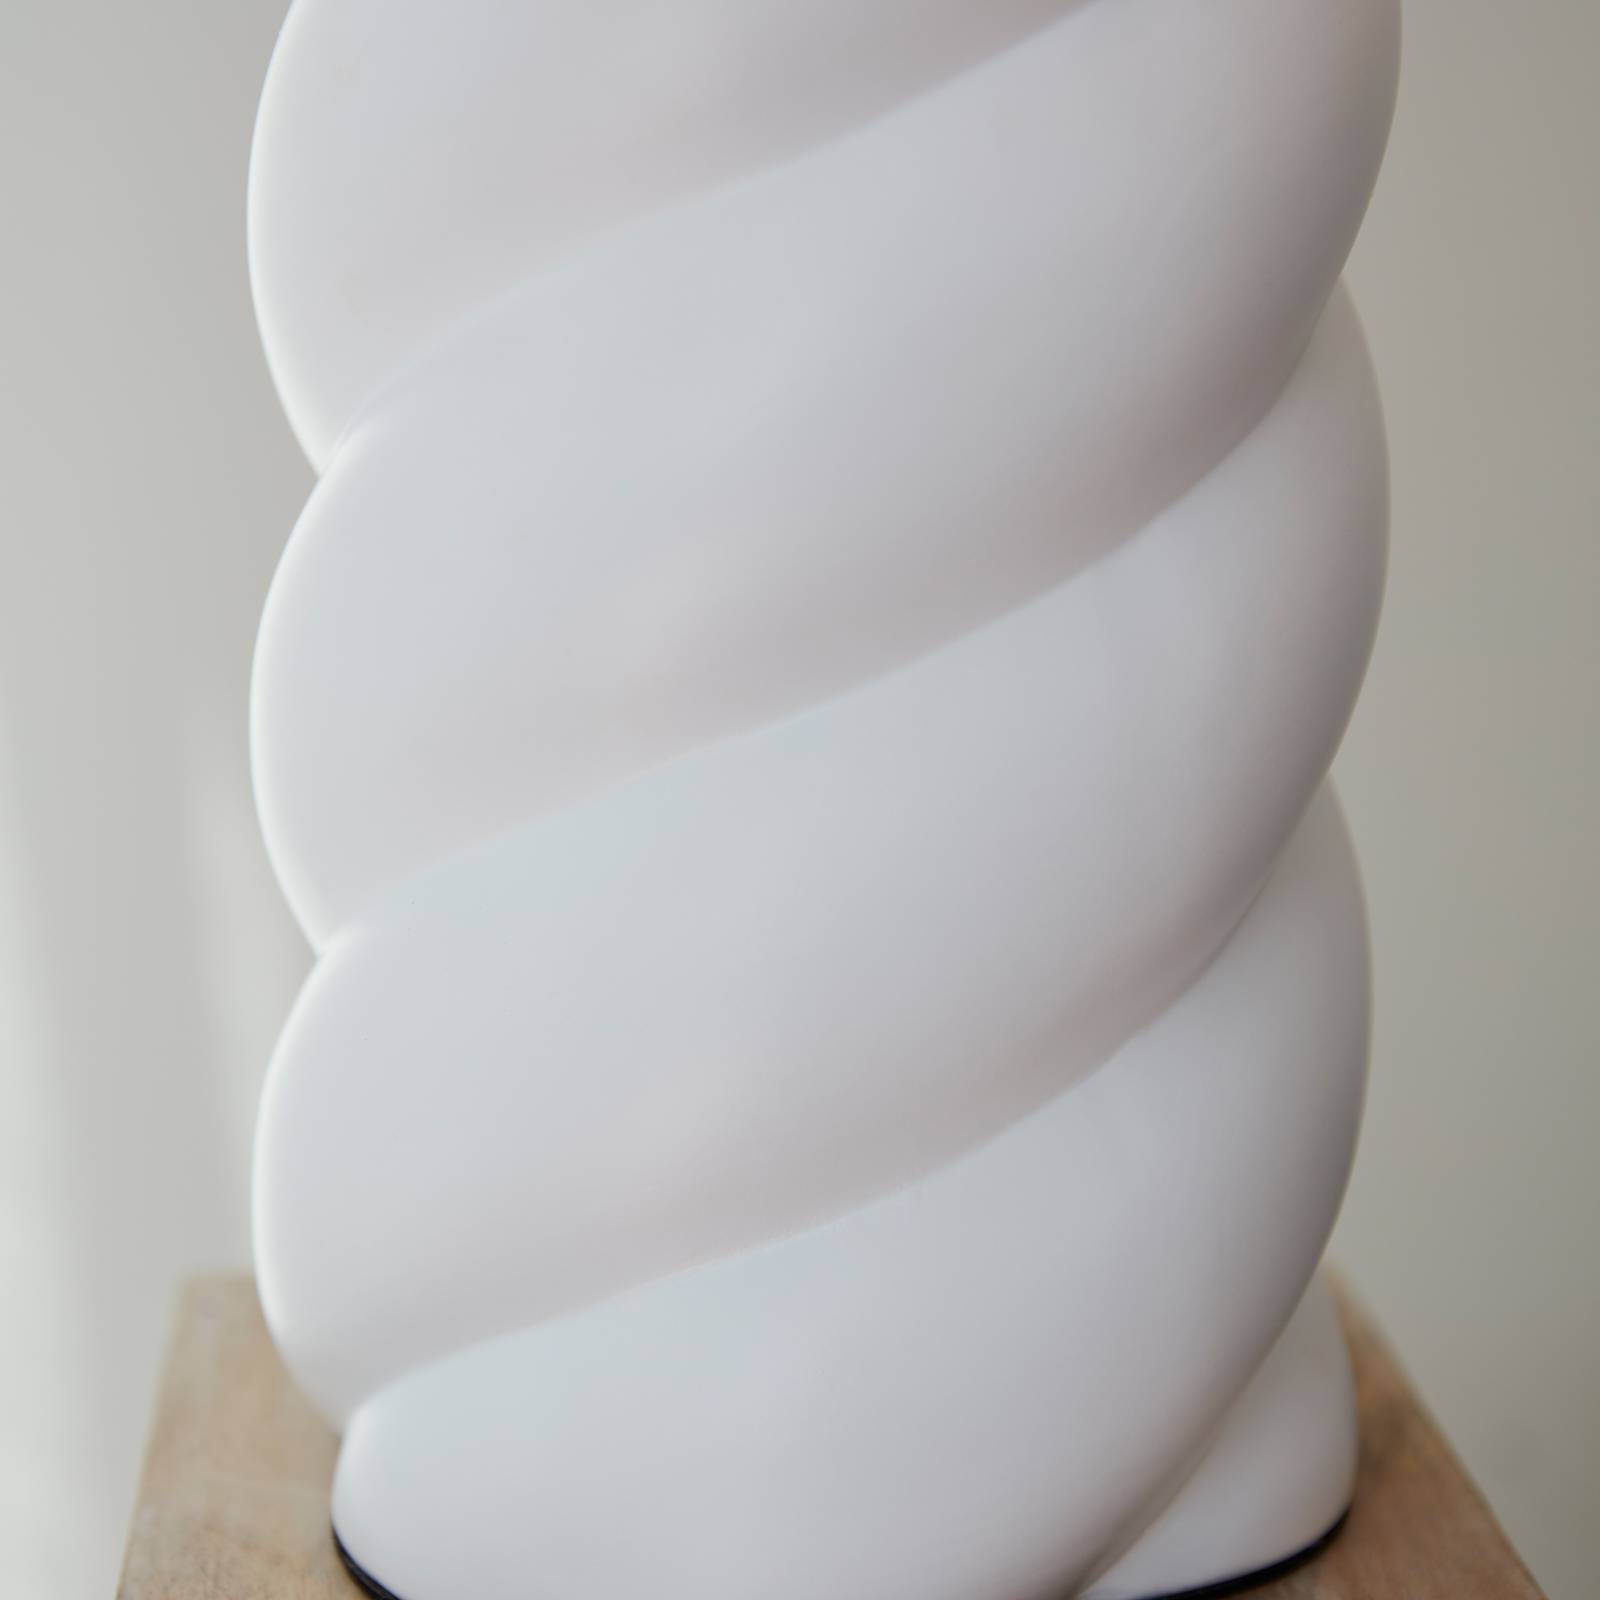 PR Home Spin bordlampe Ø 35cm hvid/natur hør